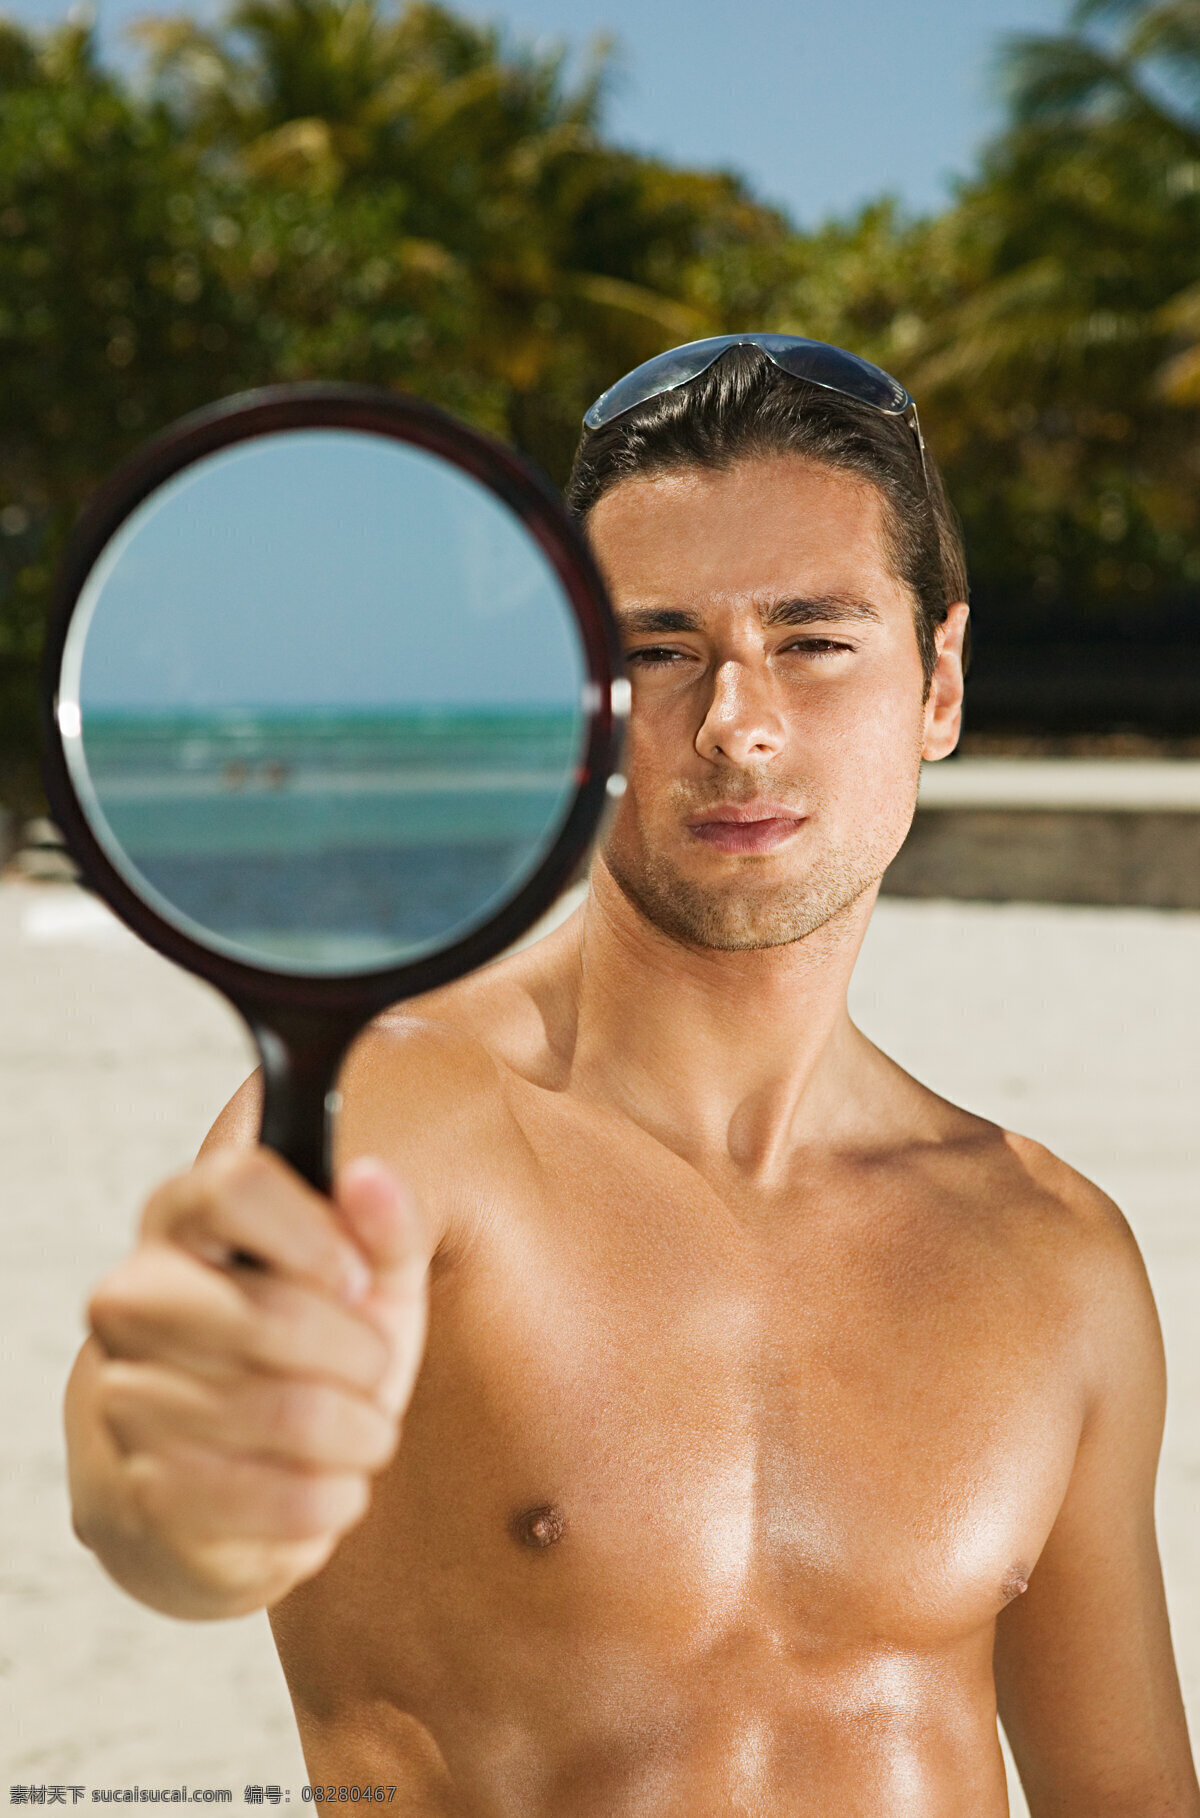 照镜子 外国 男人 海边 海滩 沙滩 外国男人 海边度假 模特 写真 诱惑 泳装 男性男人 戴墨镜 人物图库 生活人物 人物图片